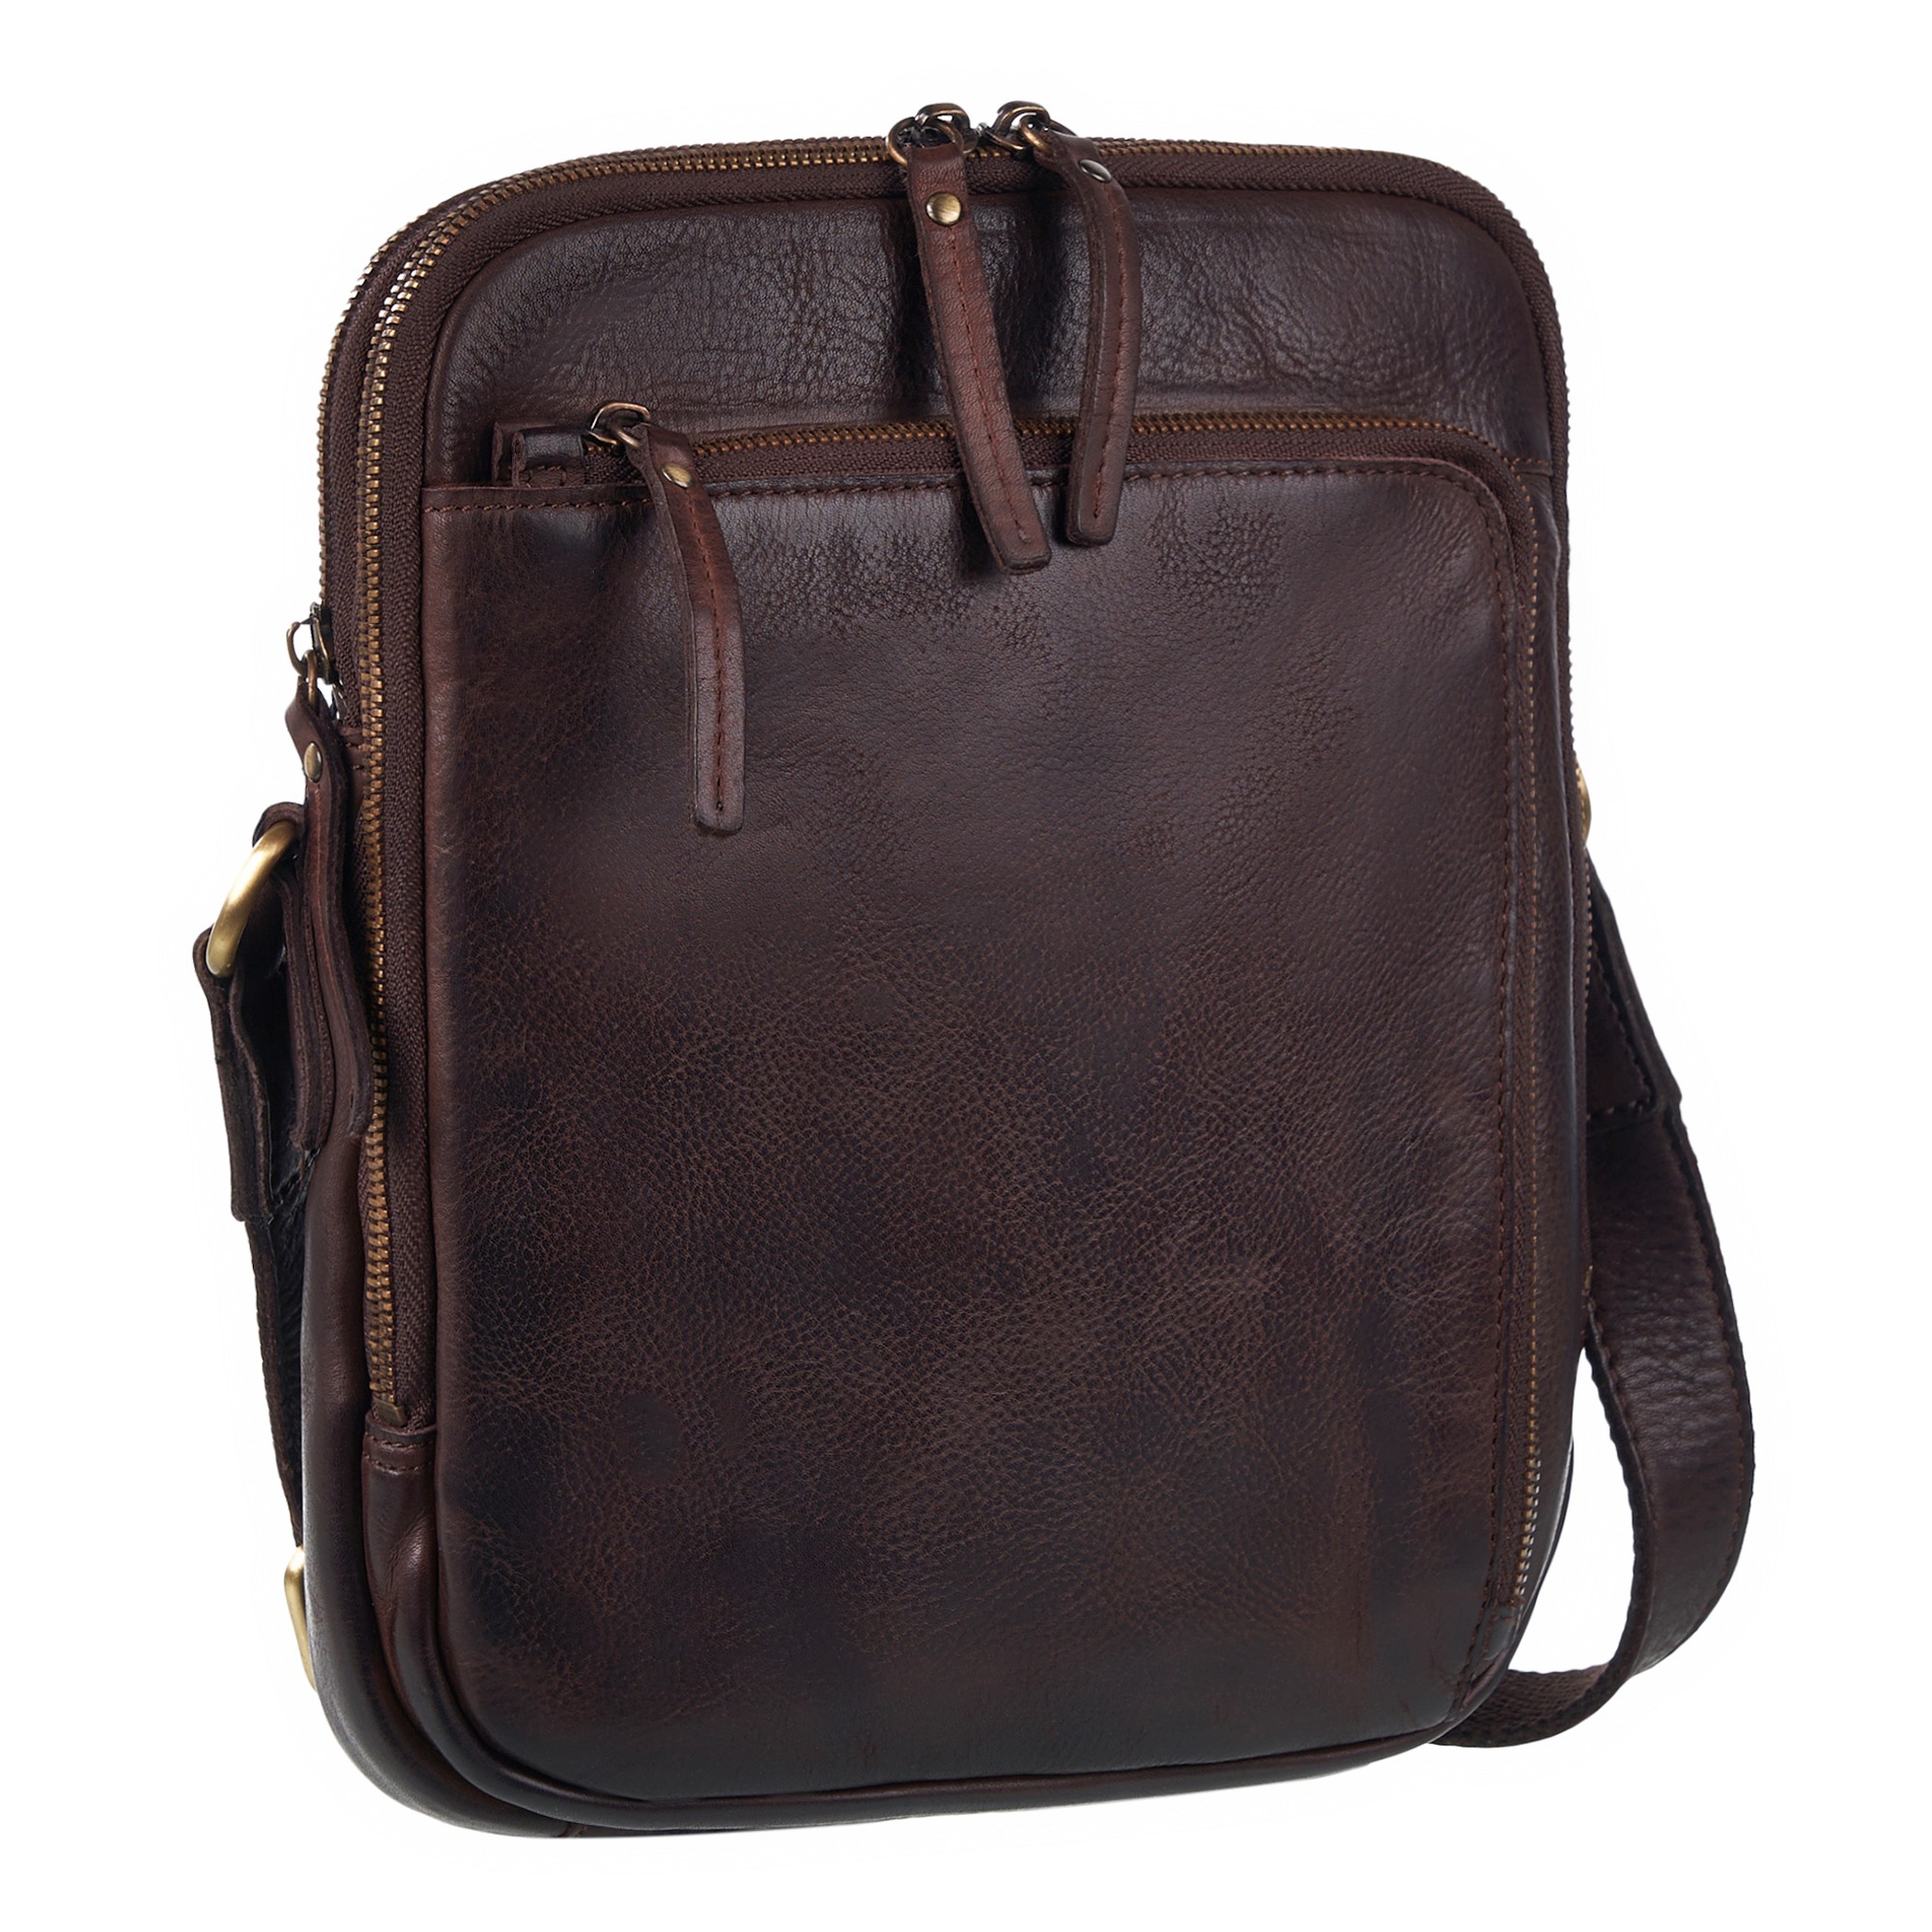 Др.Коффер M402740-248-09 сумка через плечо, цвет коричневый